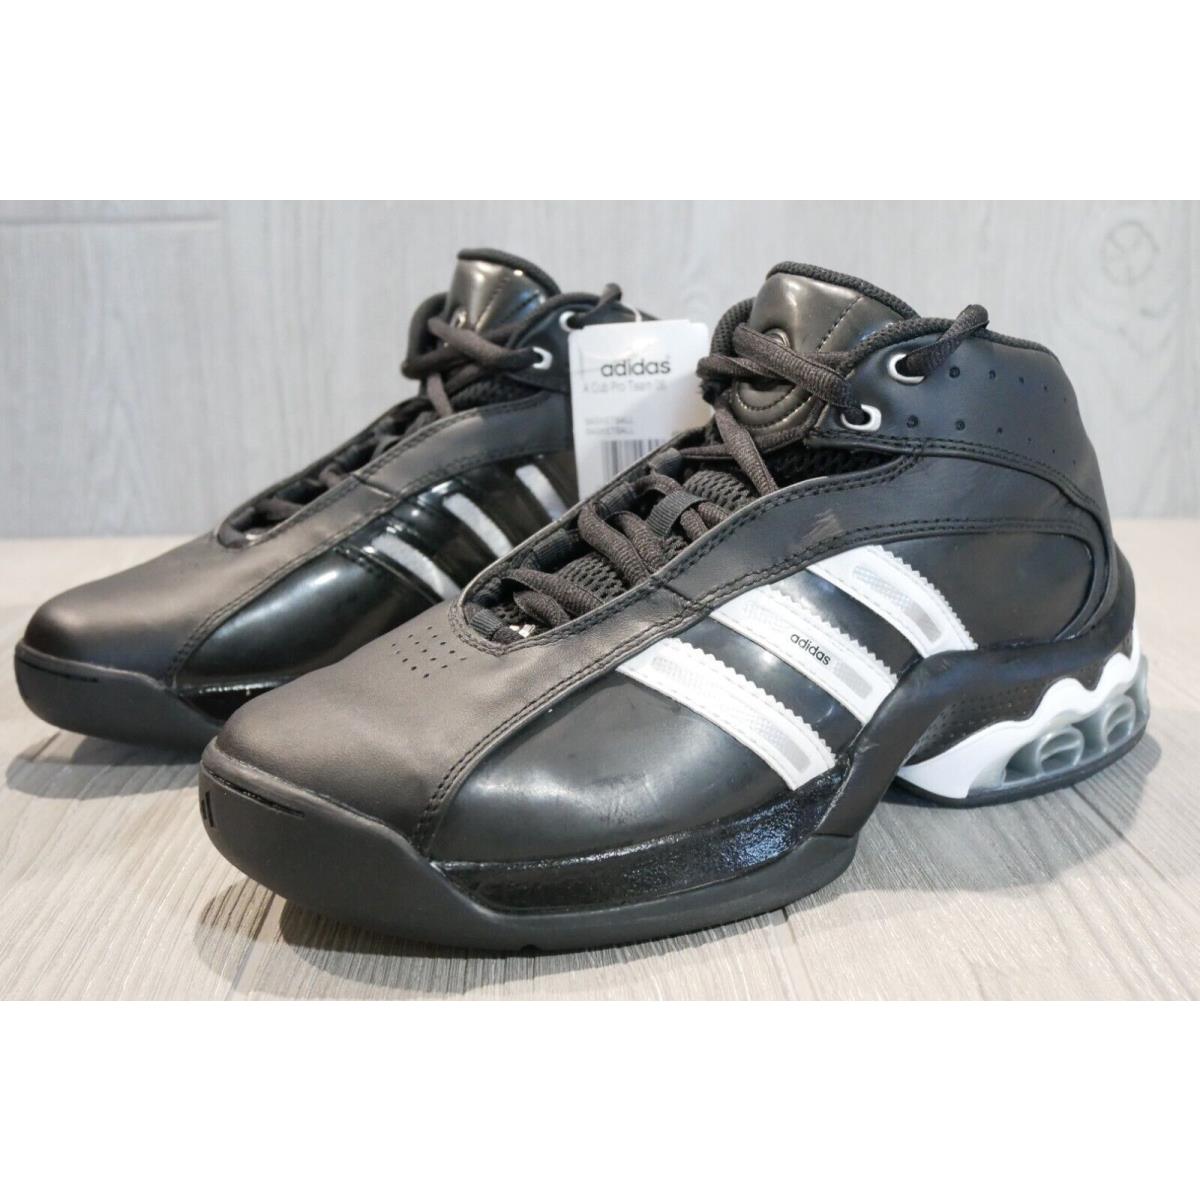 Adidas shoes Cub - Black 0